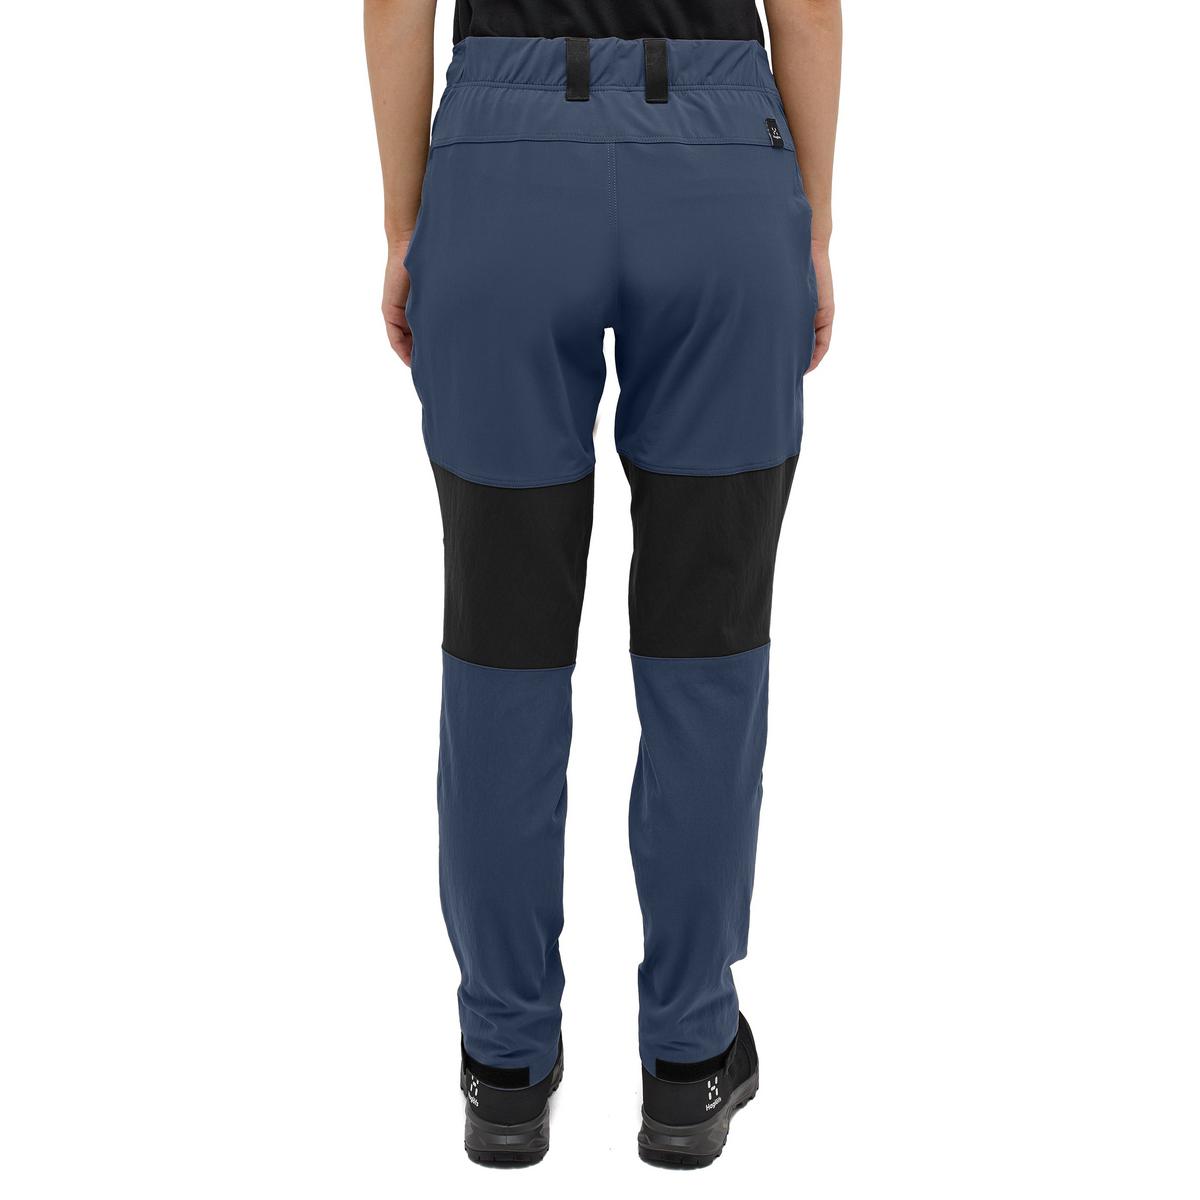 Haglofs Women's Mid Standard Pant (Reg) - Tarn Blue/Black